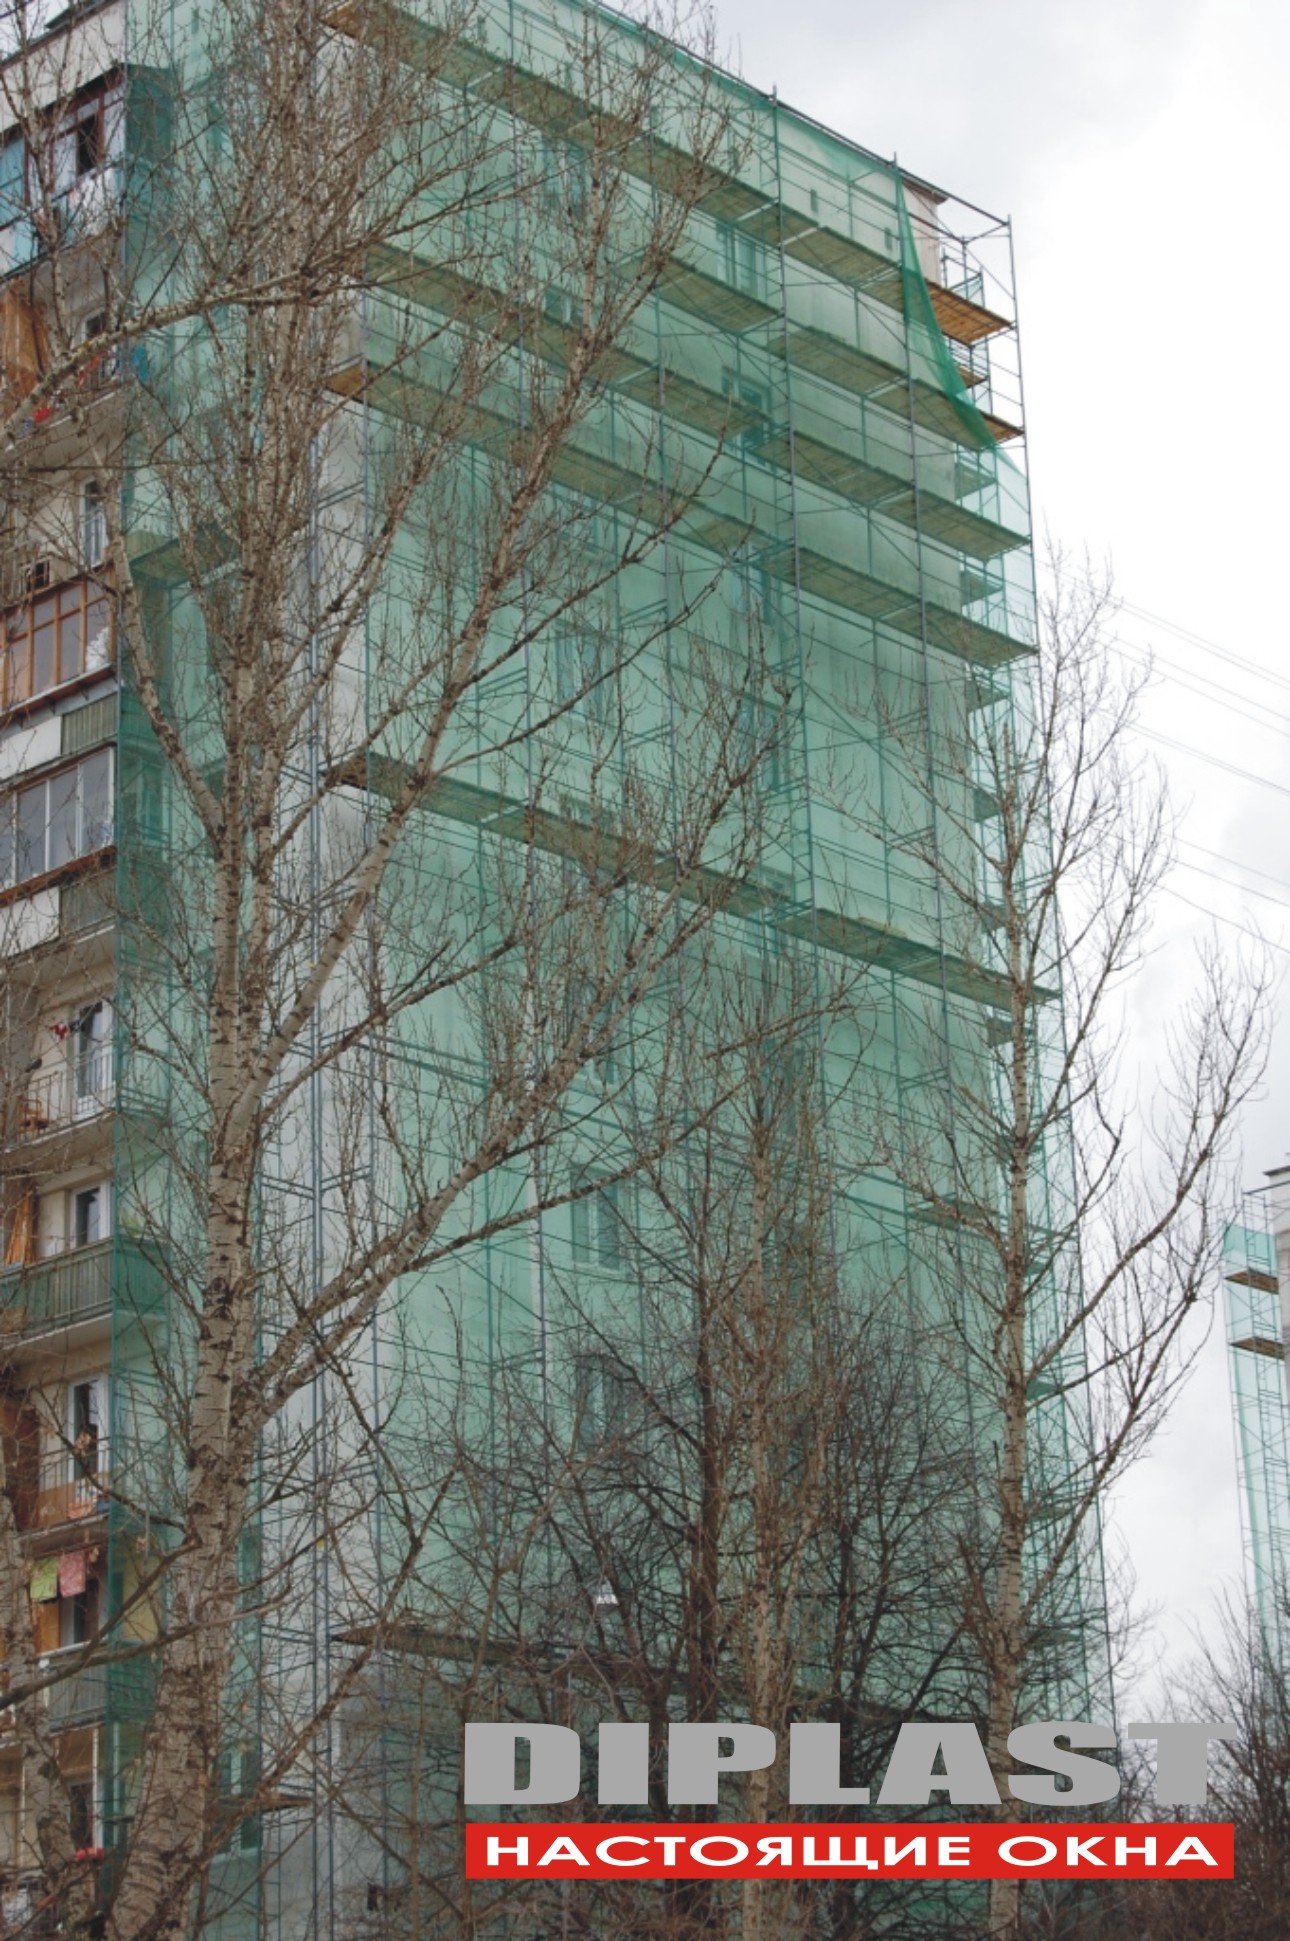 Реконструкция жилого микрорайона Гольяново, ПВХ окна произведены компанией Дипласт Инж